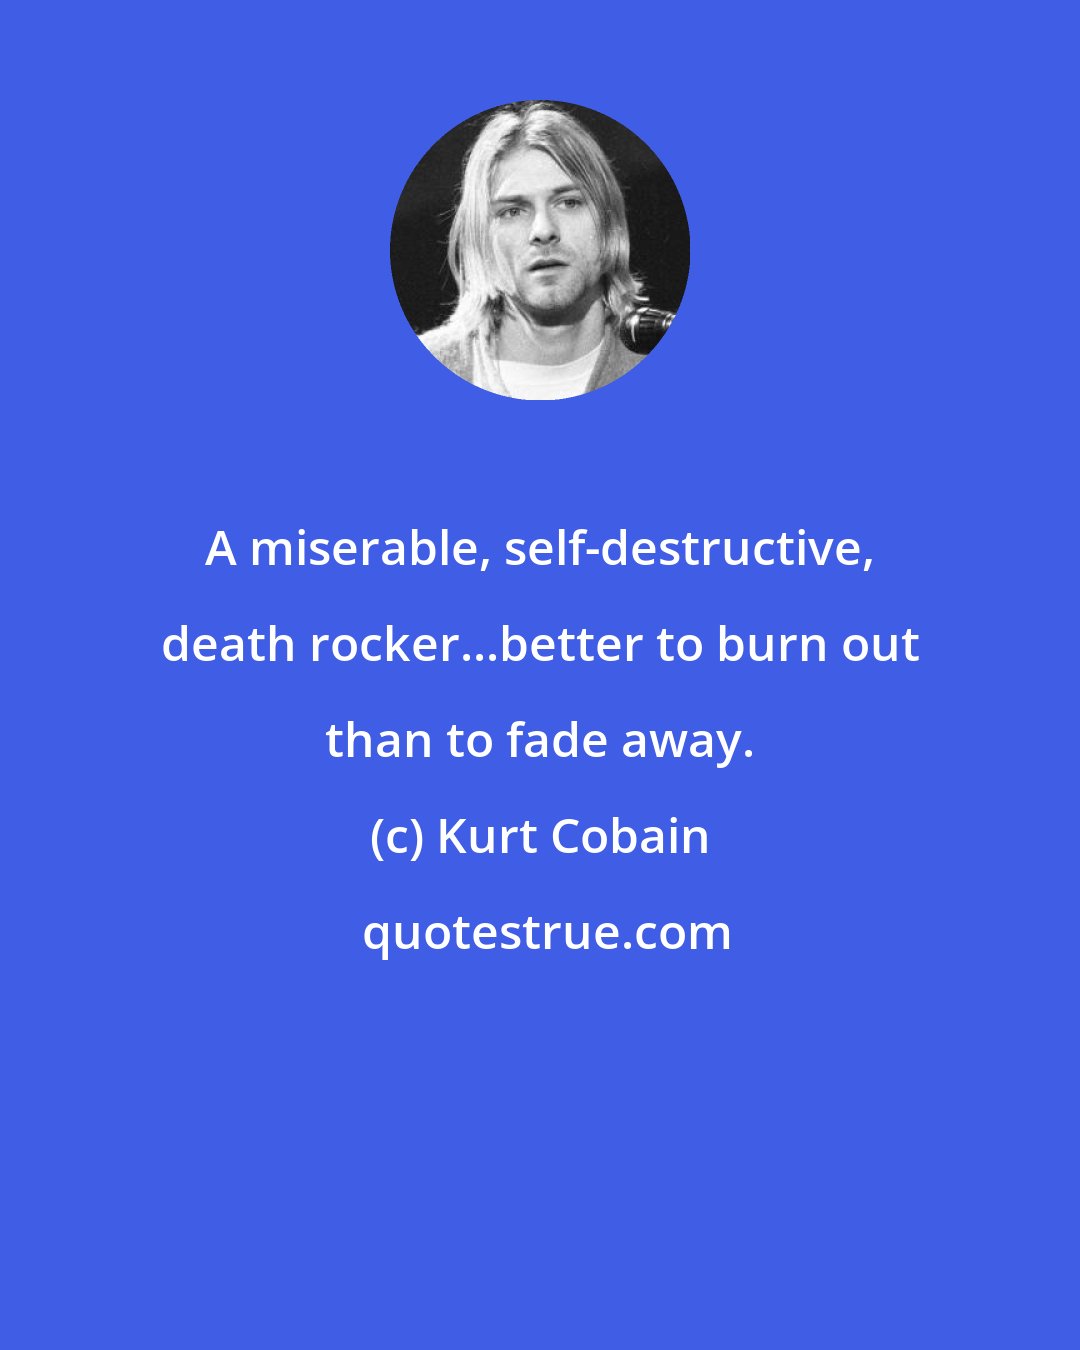 Kurt Cobain: A miserable, self-destructive, death rocker...better to burn out than to fade away.